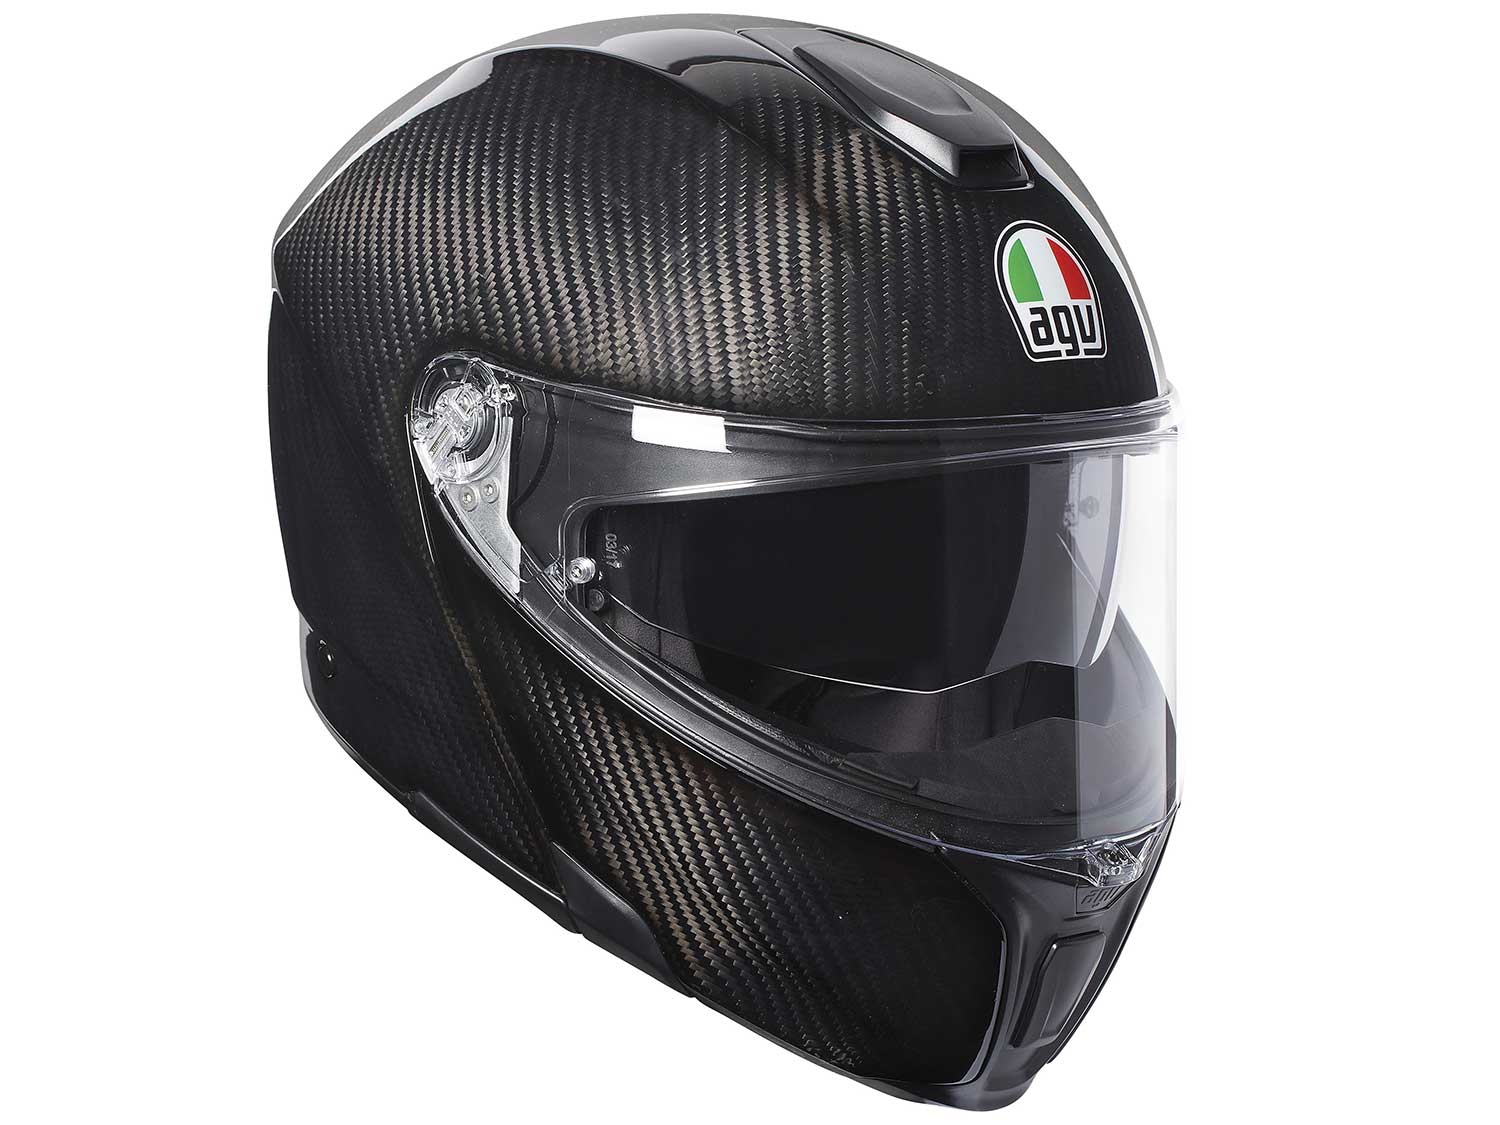 Top 5 Motorcycle Accessories for Your Helmet